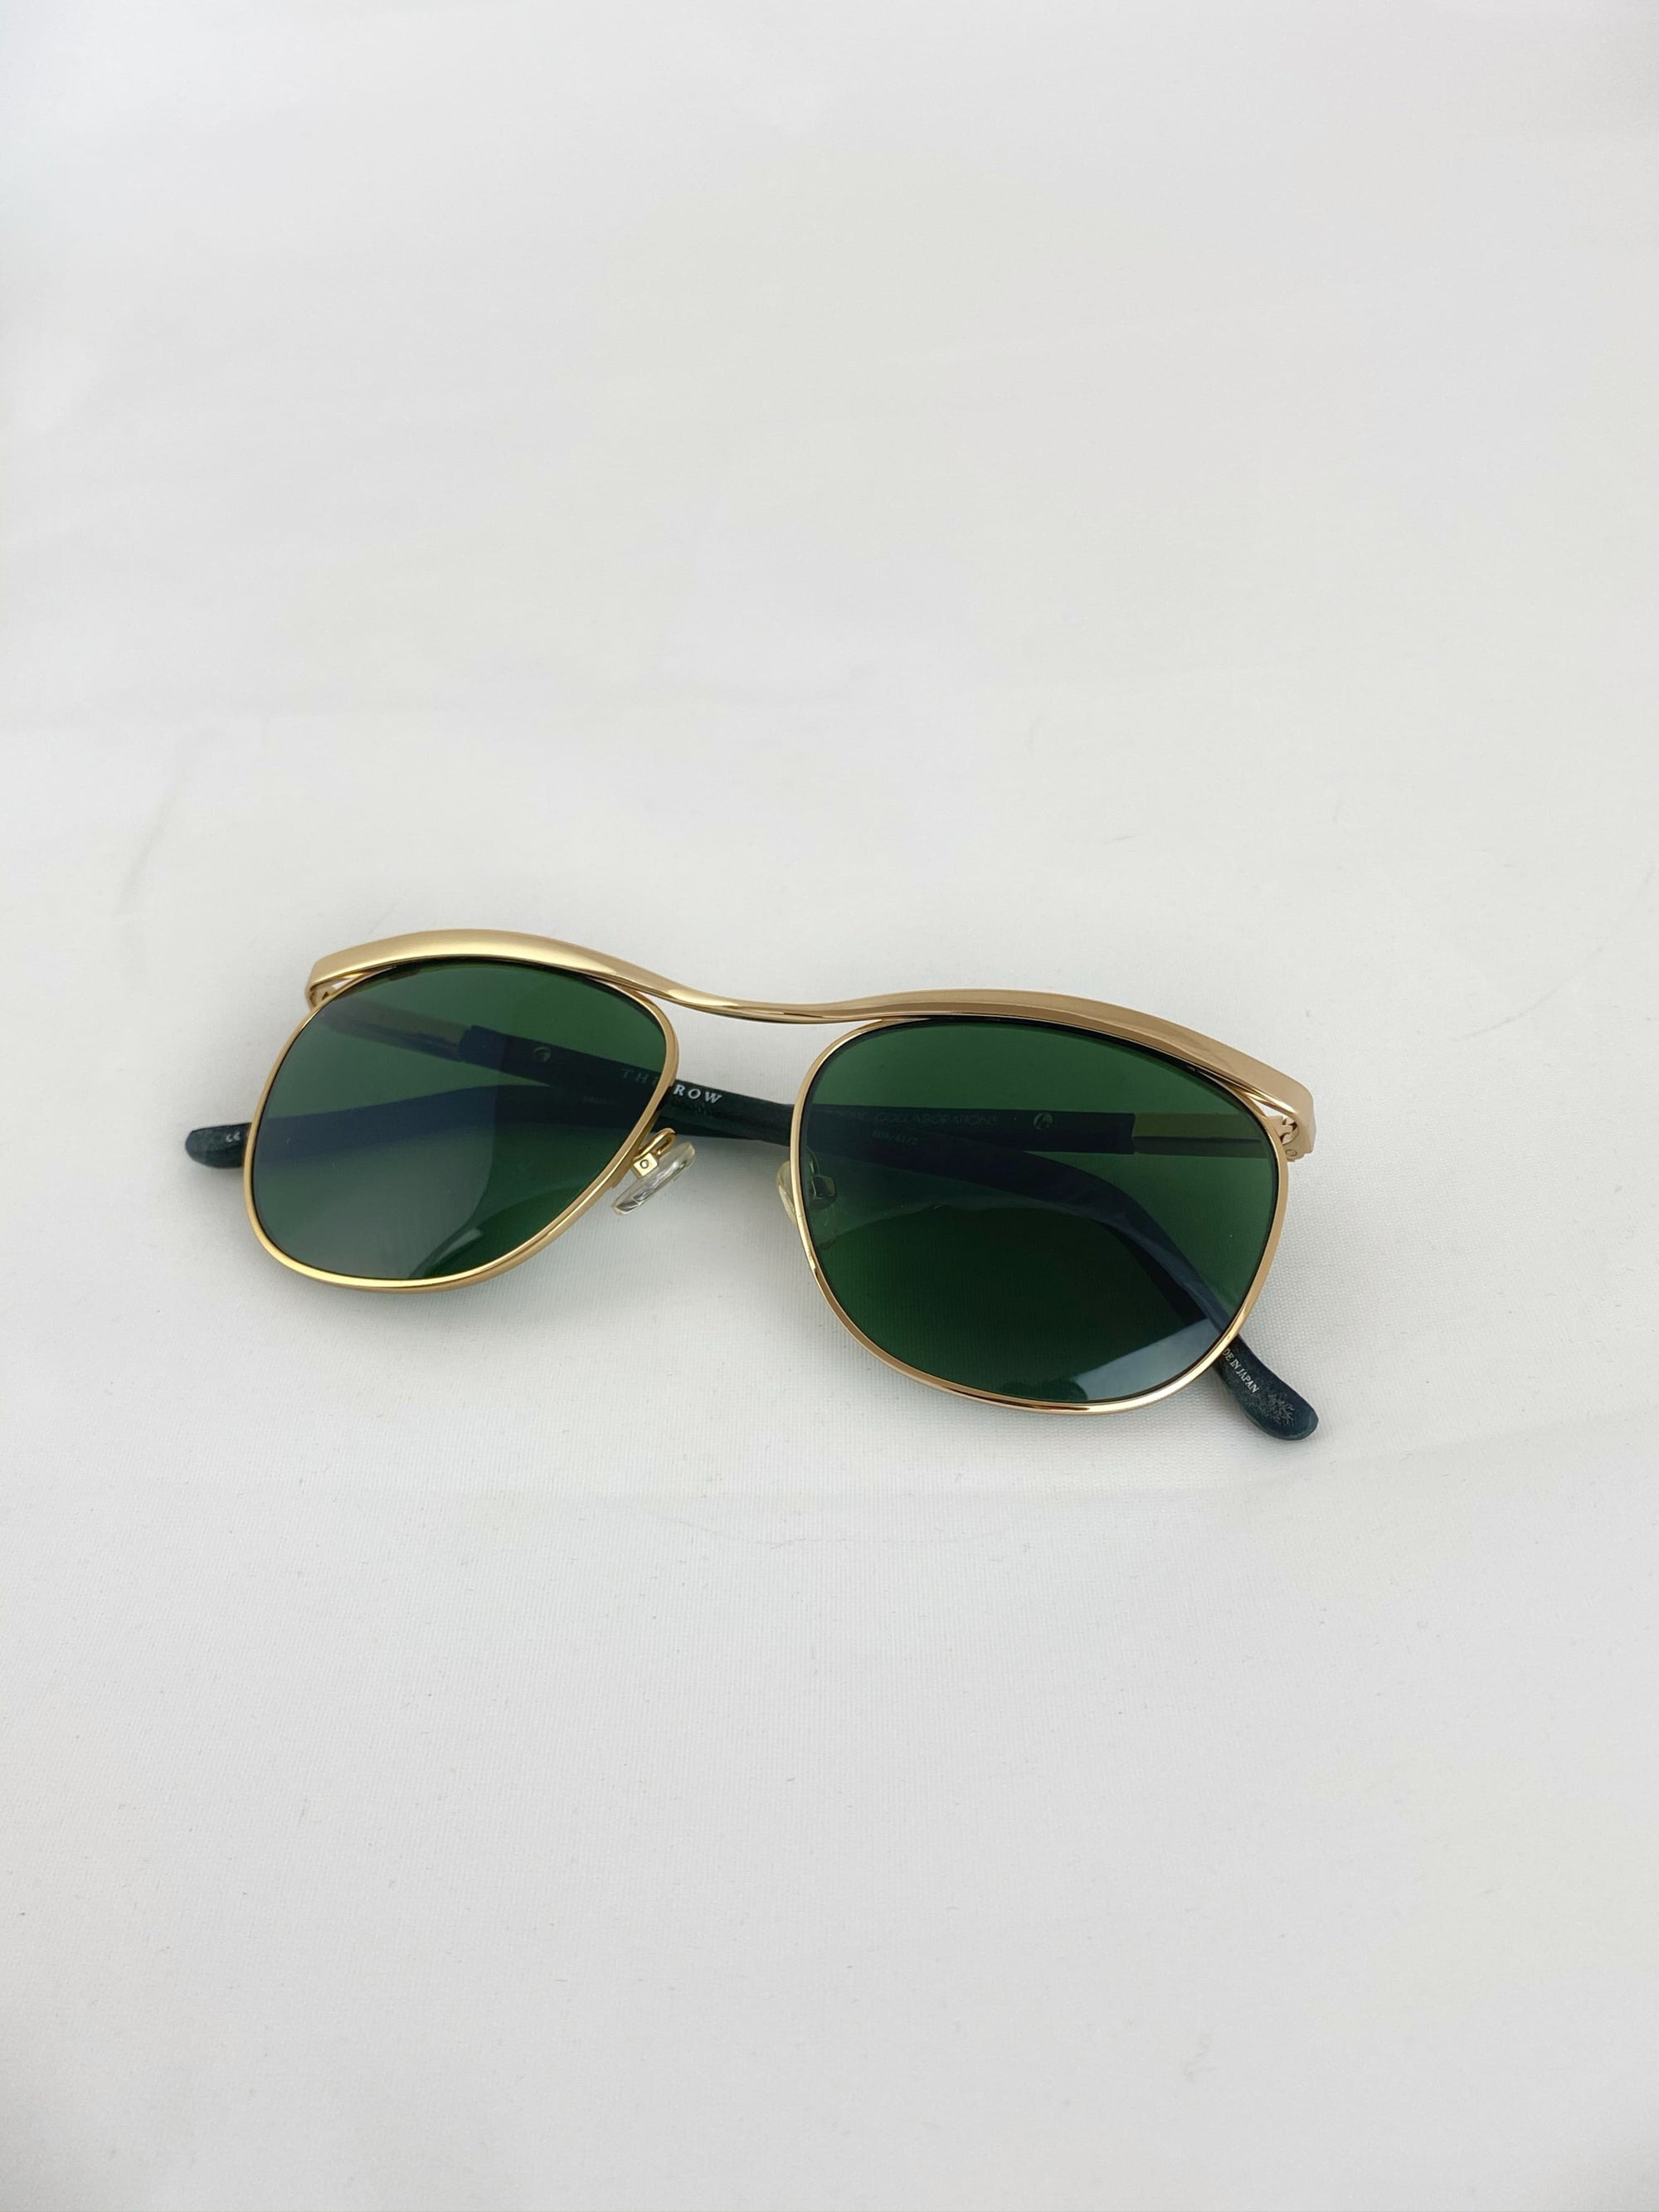 Produktbild der Linda Farrow Sunglasses The Row green/gold 5419-145 von oben vor weißem Hintergrund.